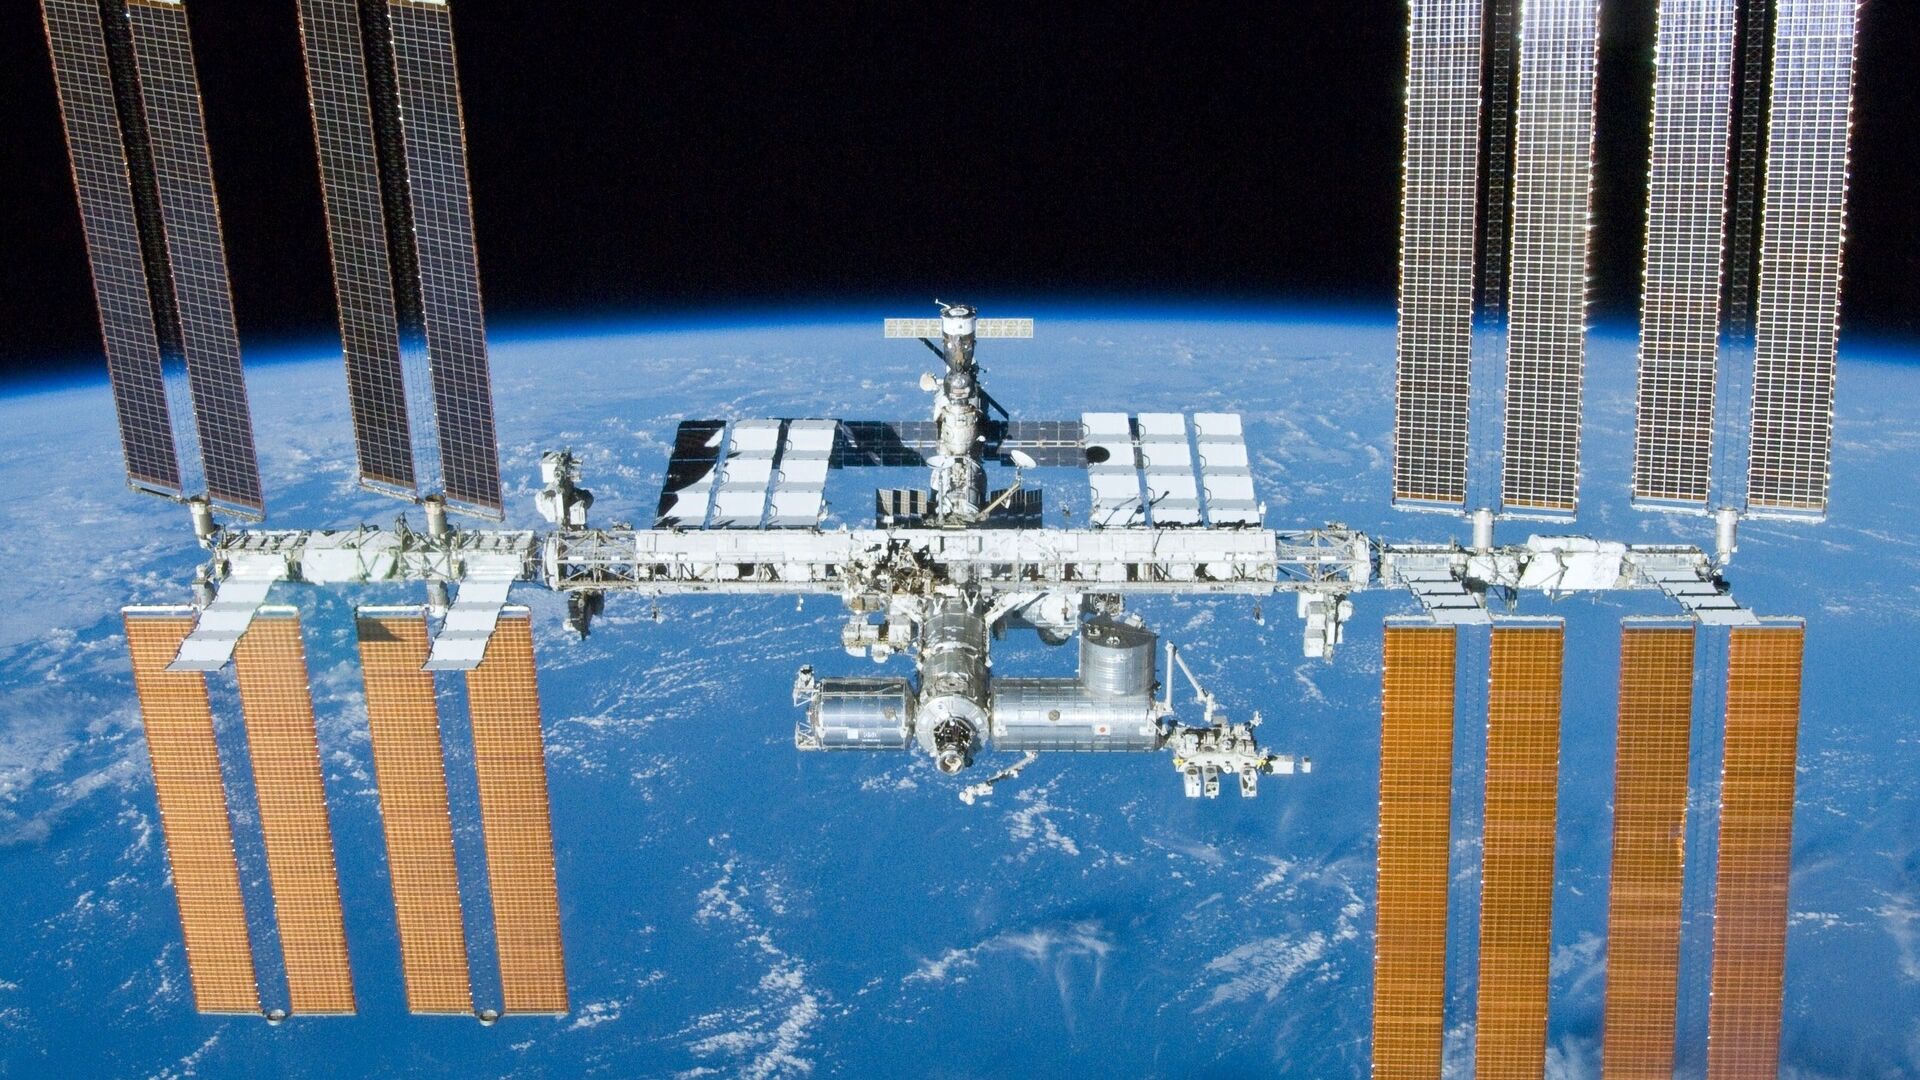 Una vista iconica della Stazione Spaziale Internazionale dallo Shuttle Atlantis durante la missione STS-132 il 23 maggio 2010